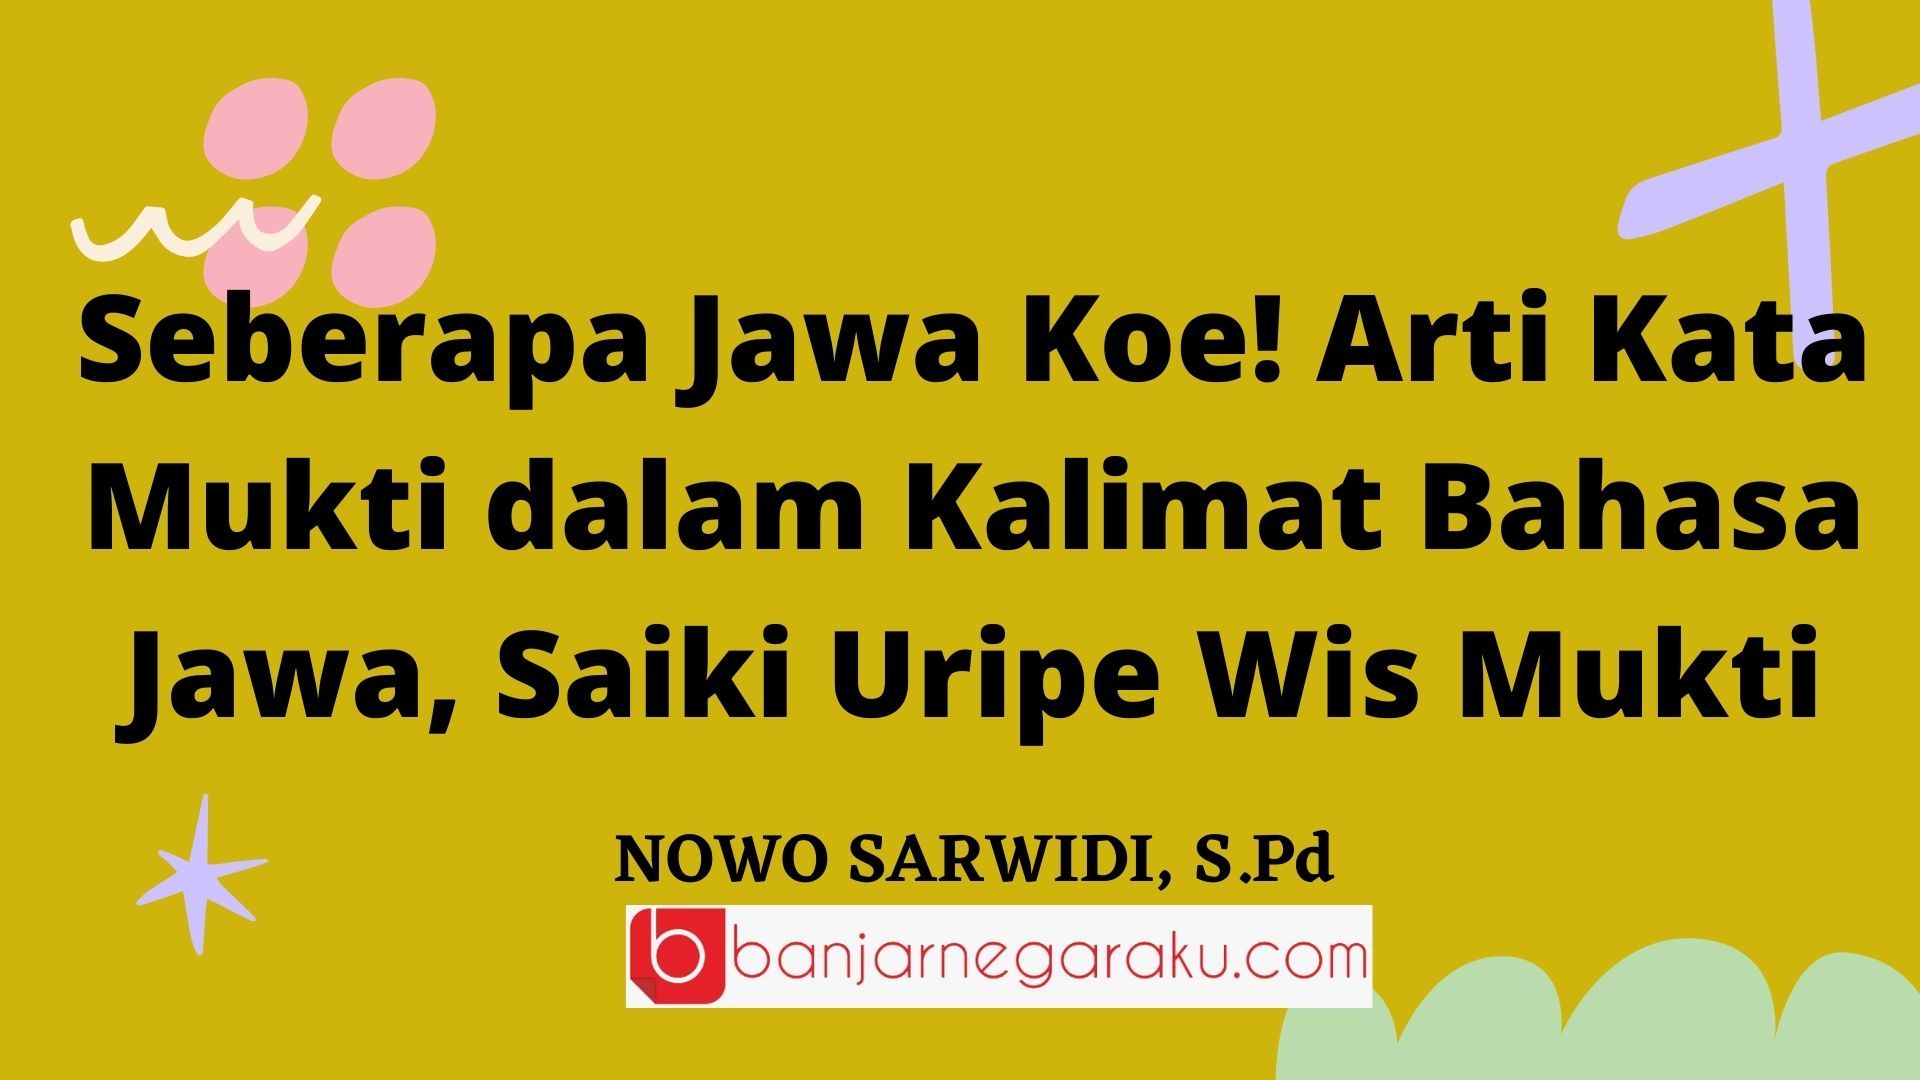 Seberapa Jawa Koe! Arti Kata Mukti dalam Kalimat Bahasa Jawa, Saiki Uripe Wis Mukti